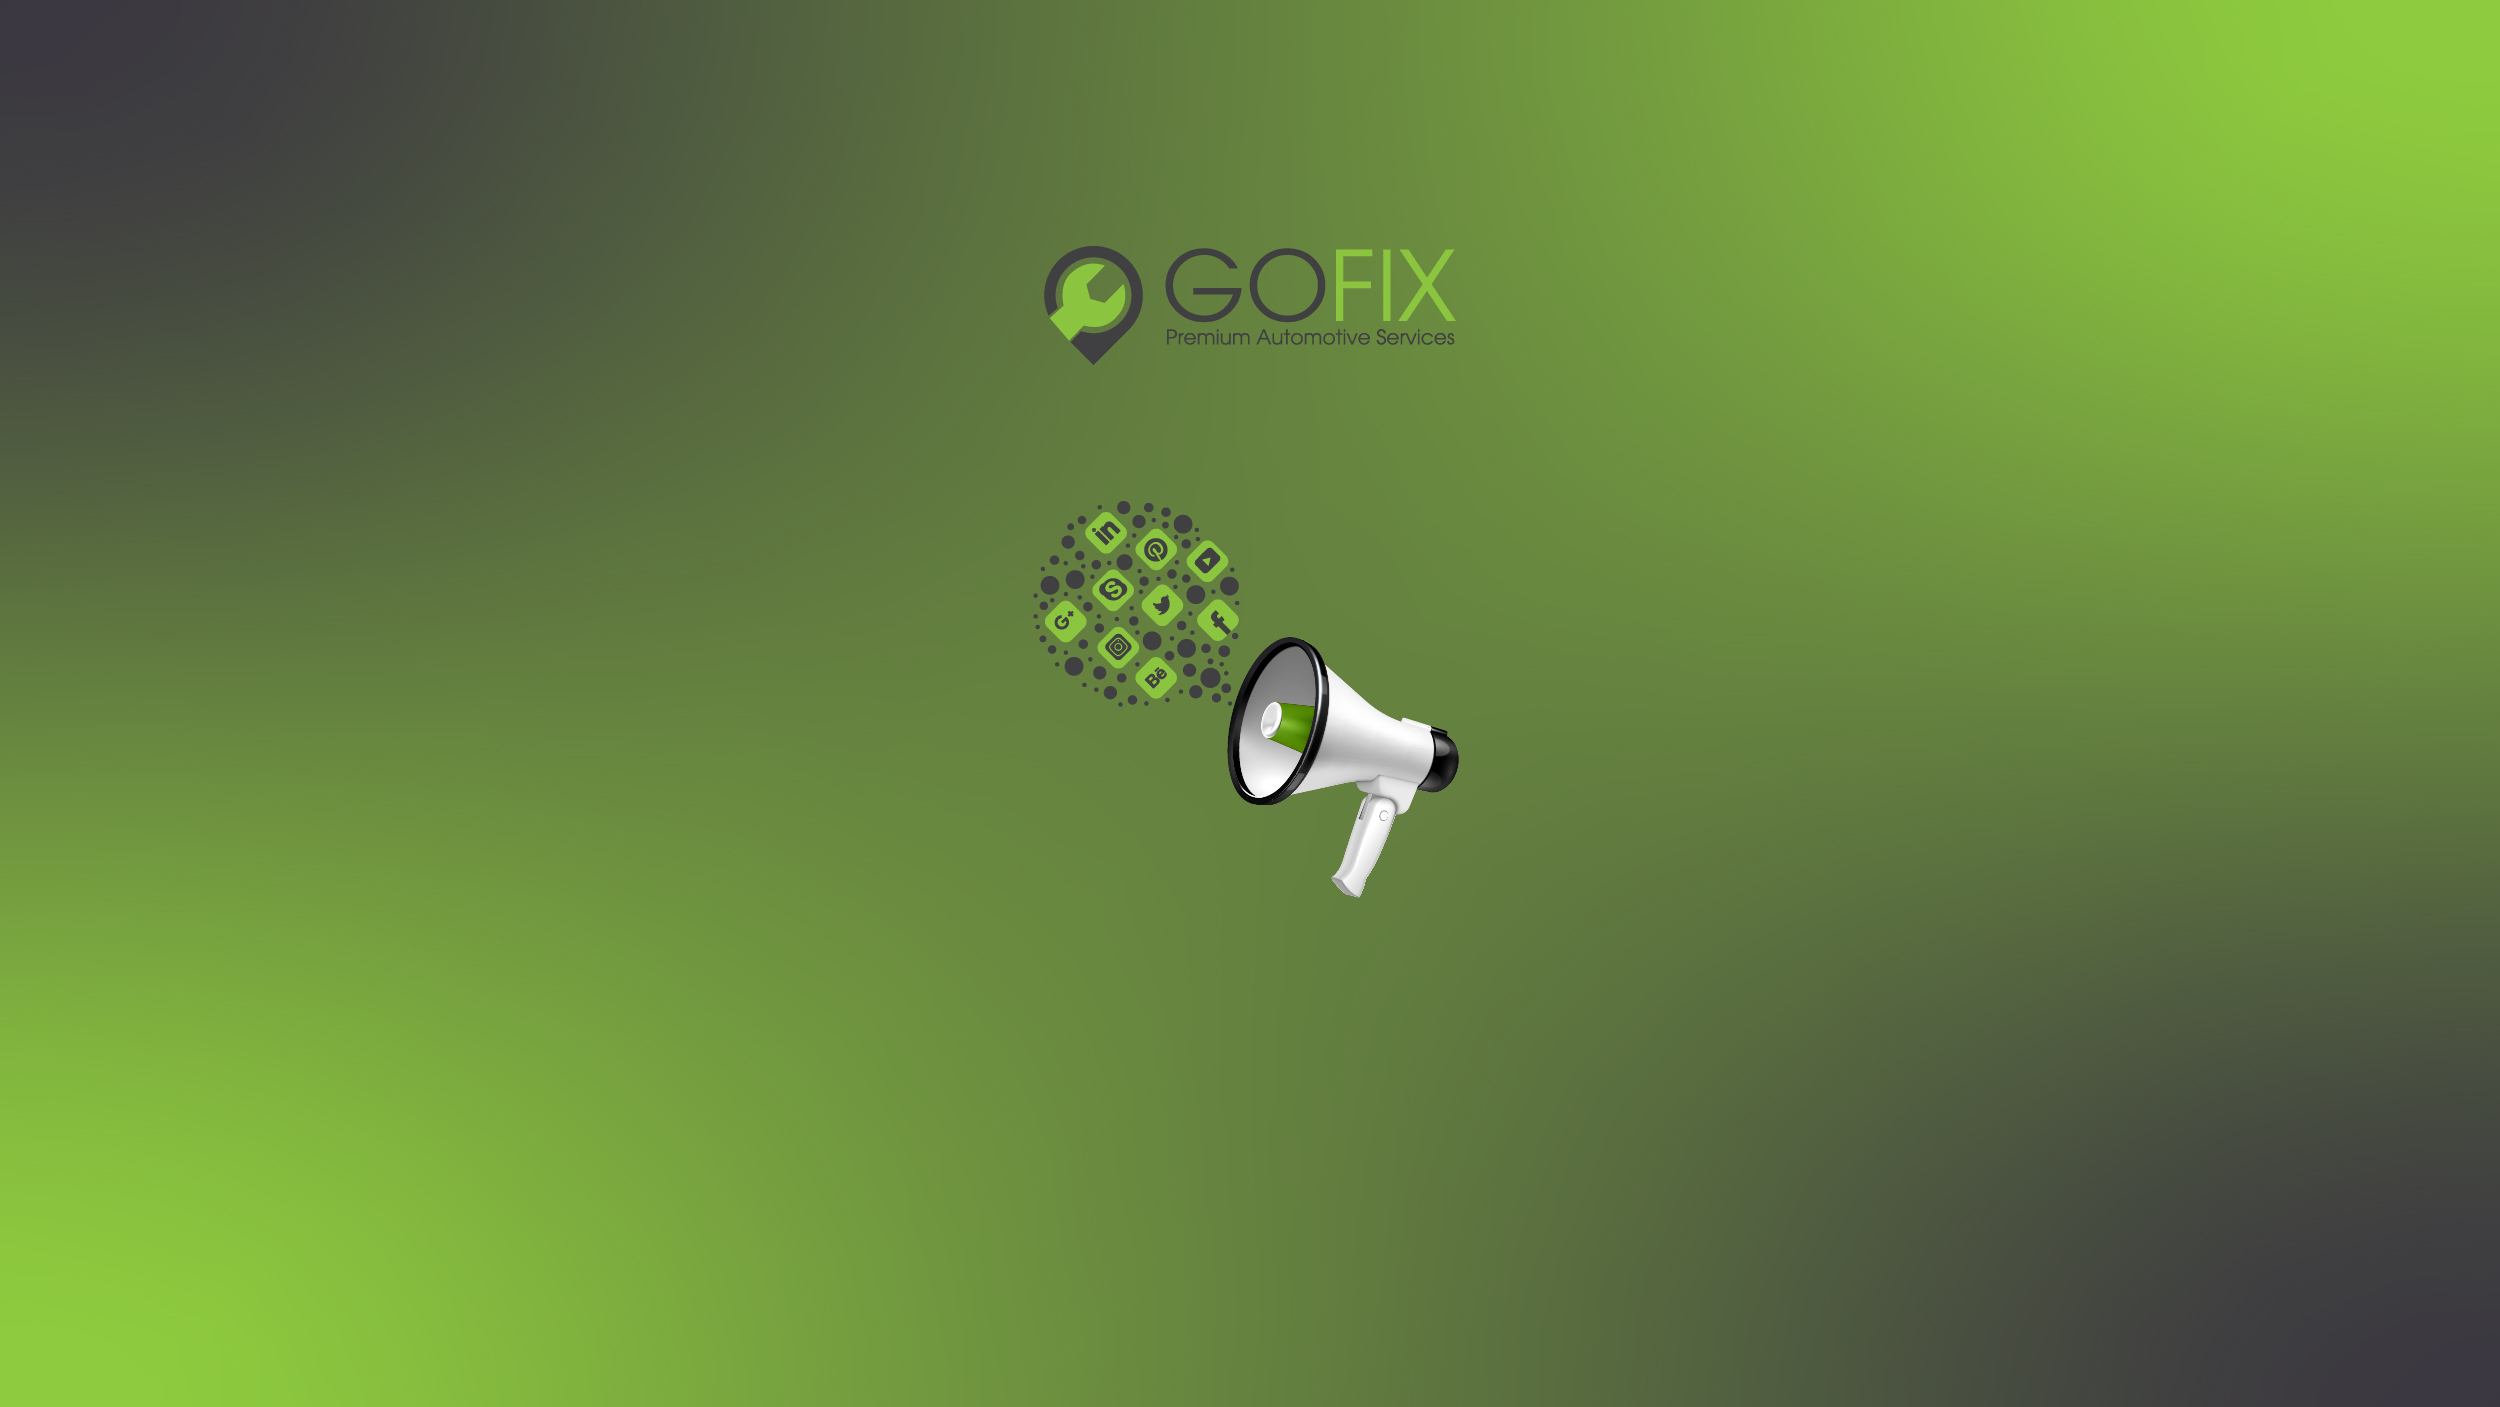 GoFix Social Cover